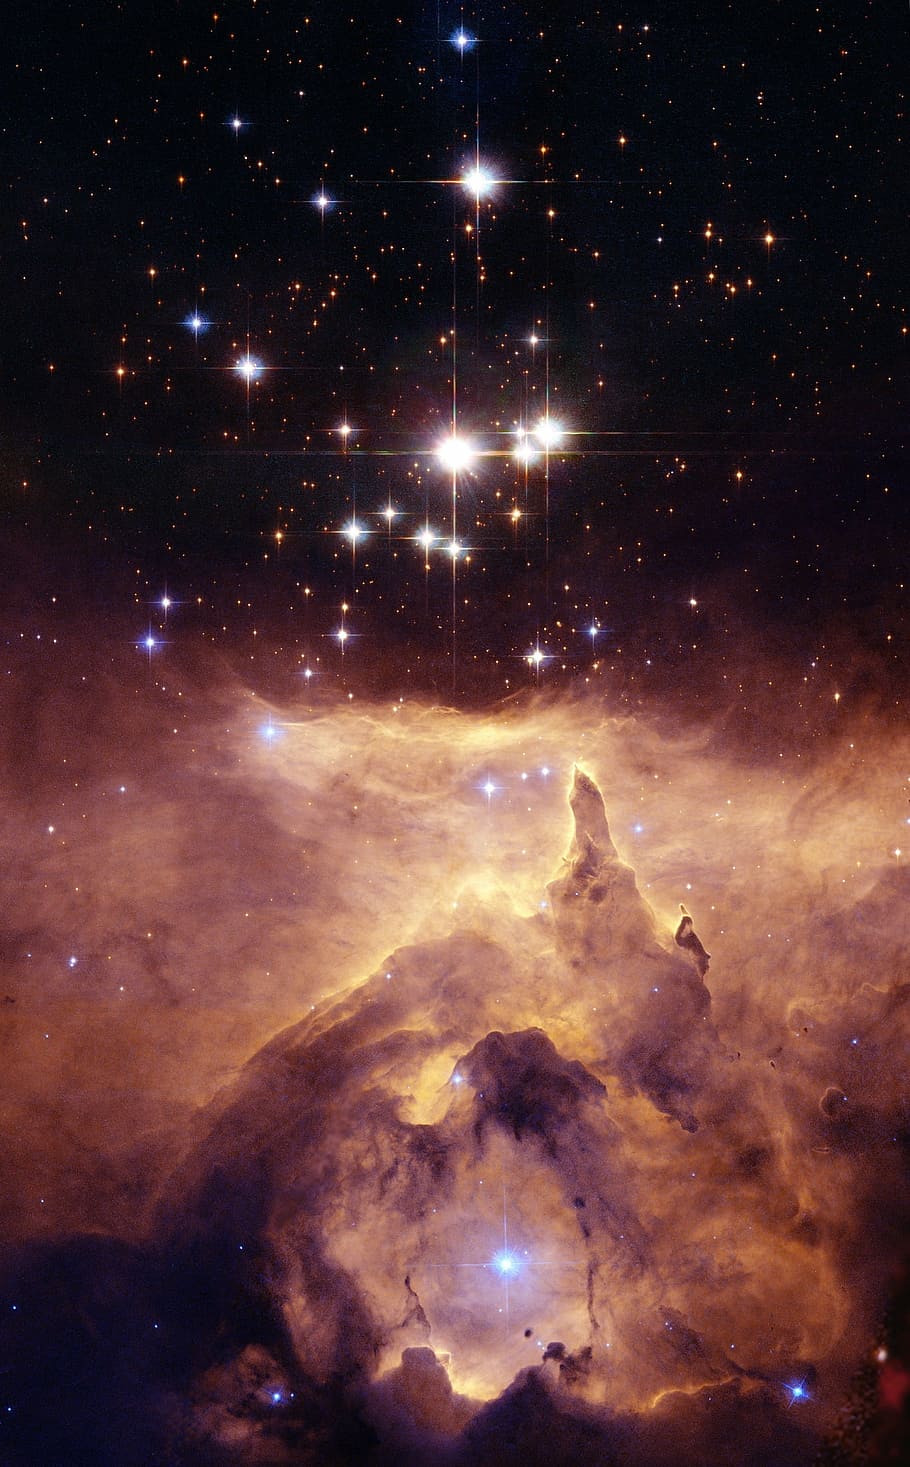 estrela no céu, nebulosa de lagosta, ngc 6357, nebulosa difusa, espaço, cosmos, universo, celestial, estrelas, luzes